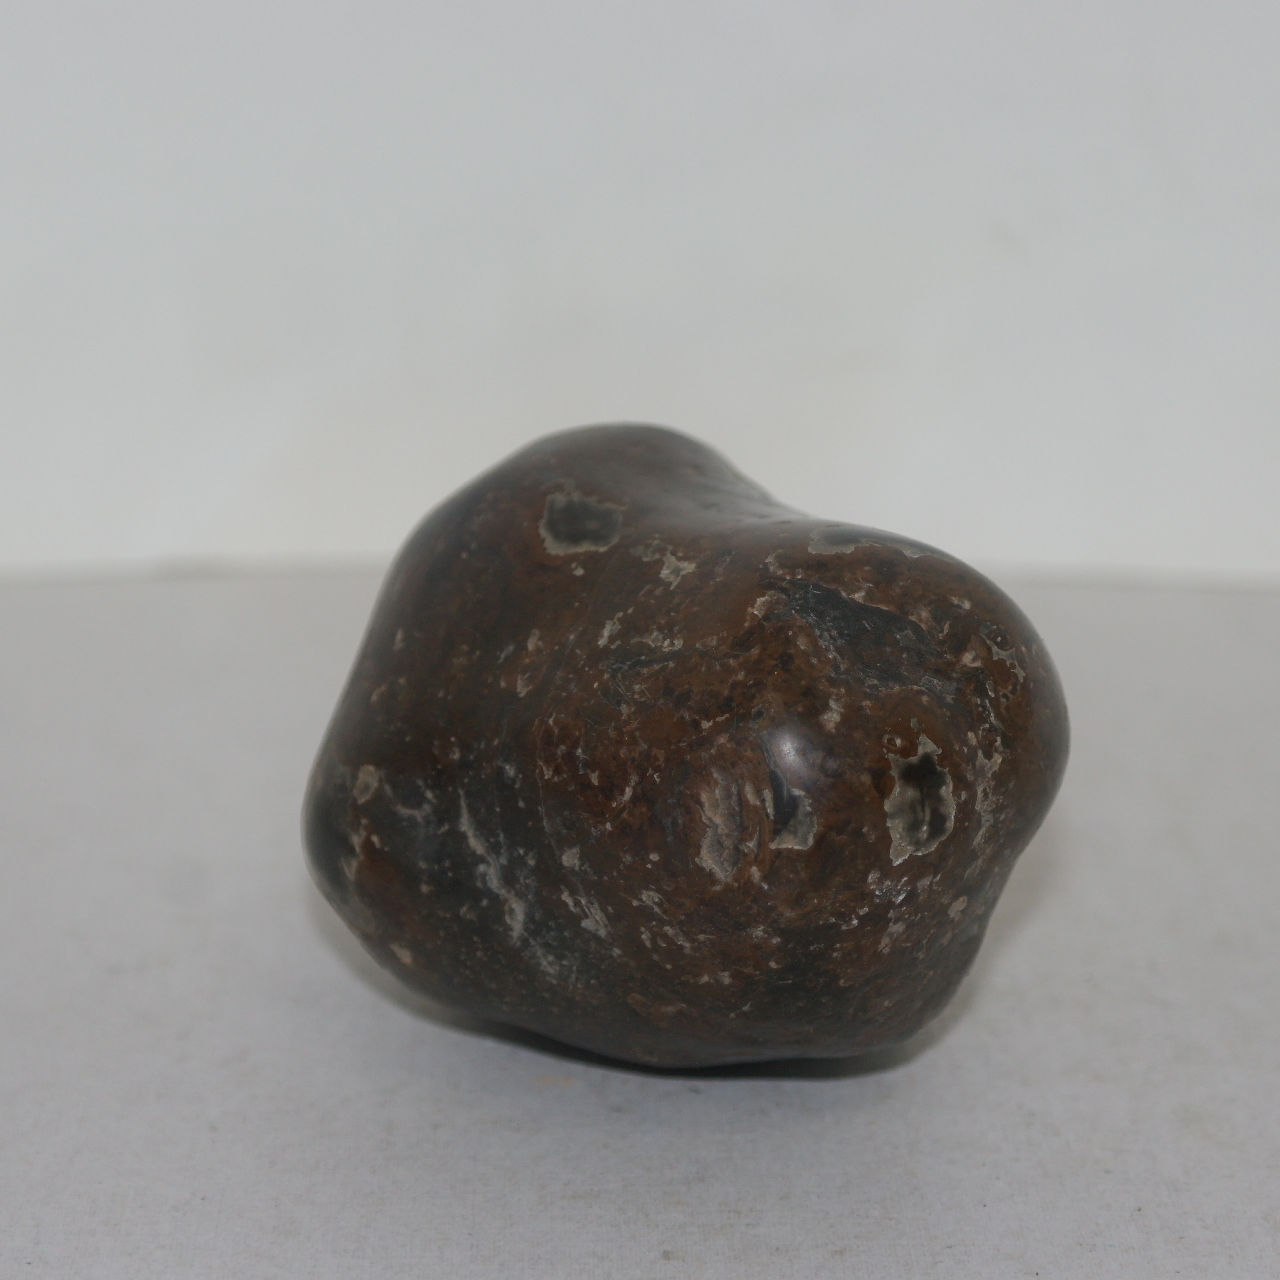 운석으로 보이는 특이한 돌